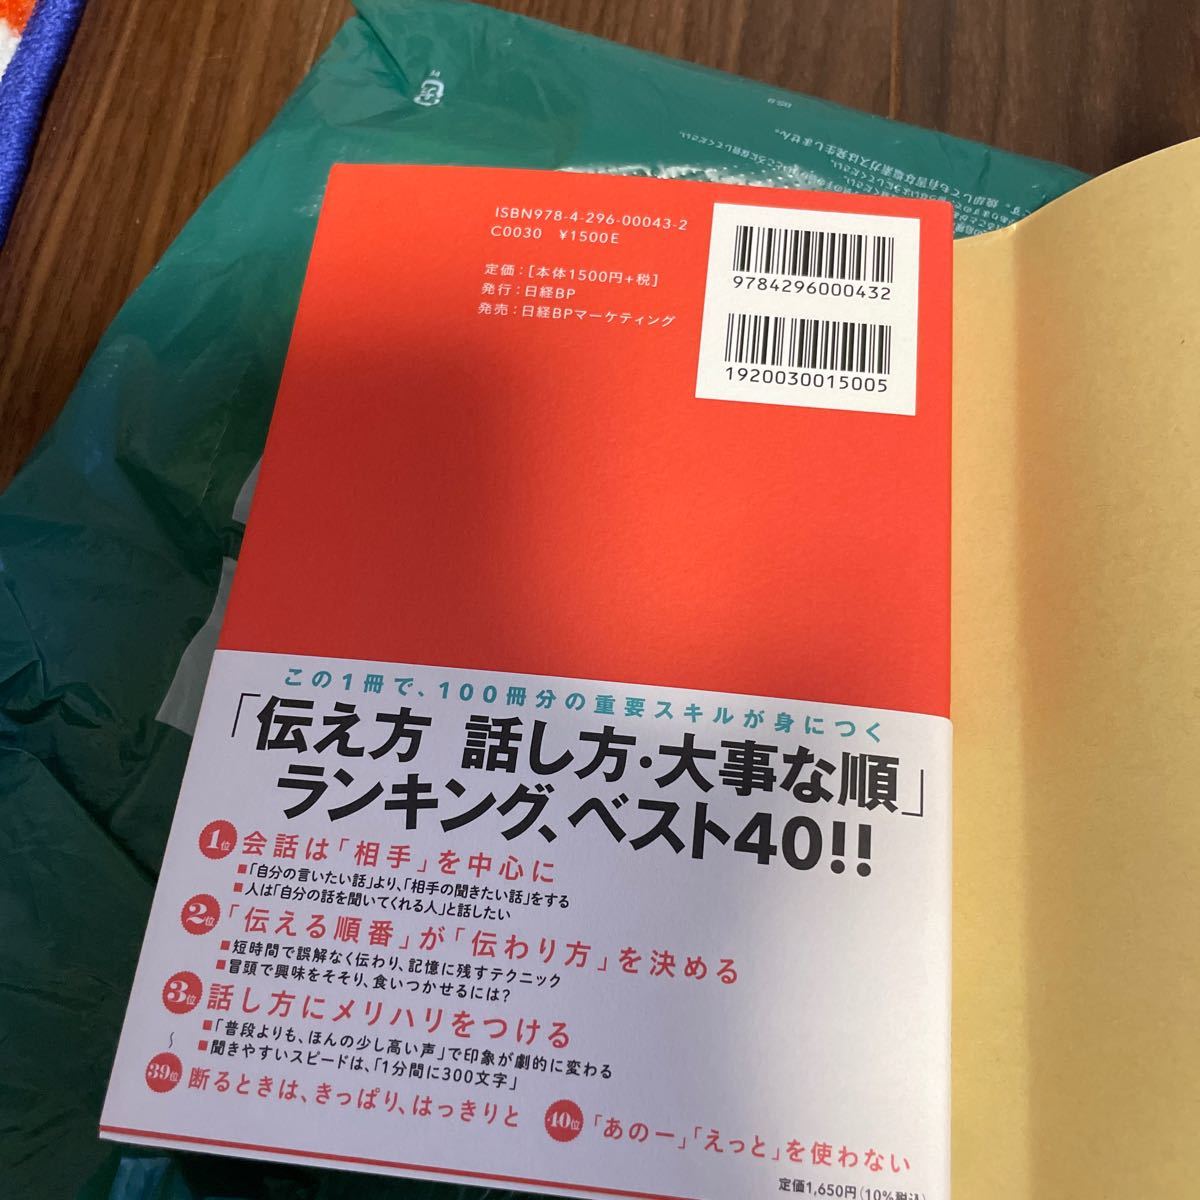 「話し方のベストセラー100冊」 のポイントを1冊にまとめてみた。 /藤吉豊/小川真理子